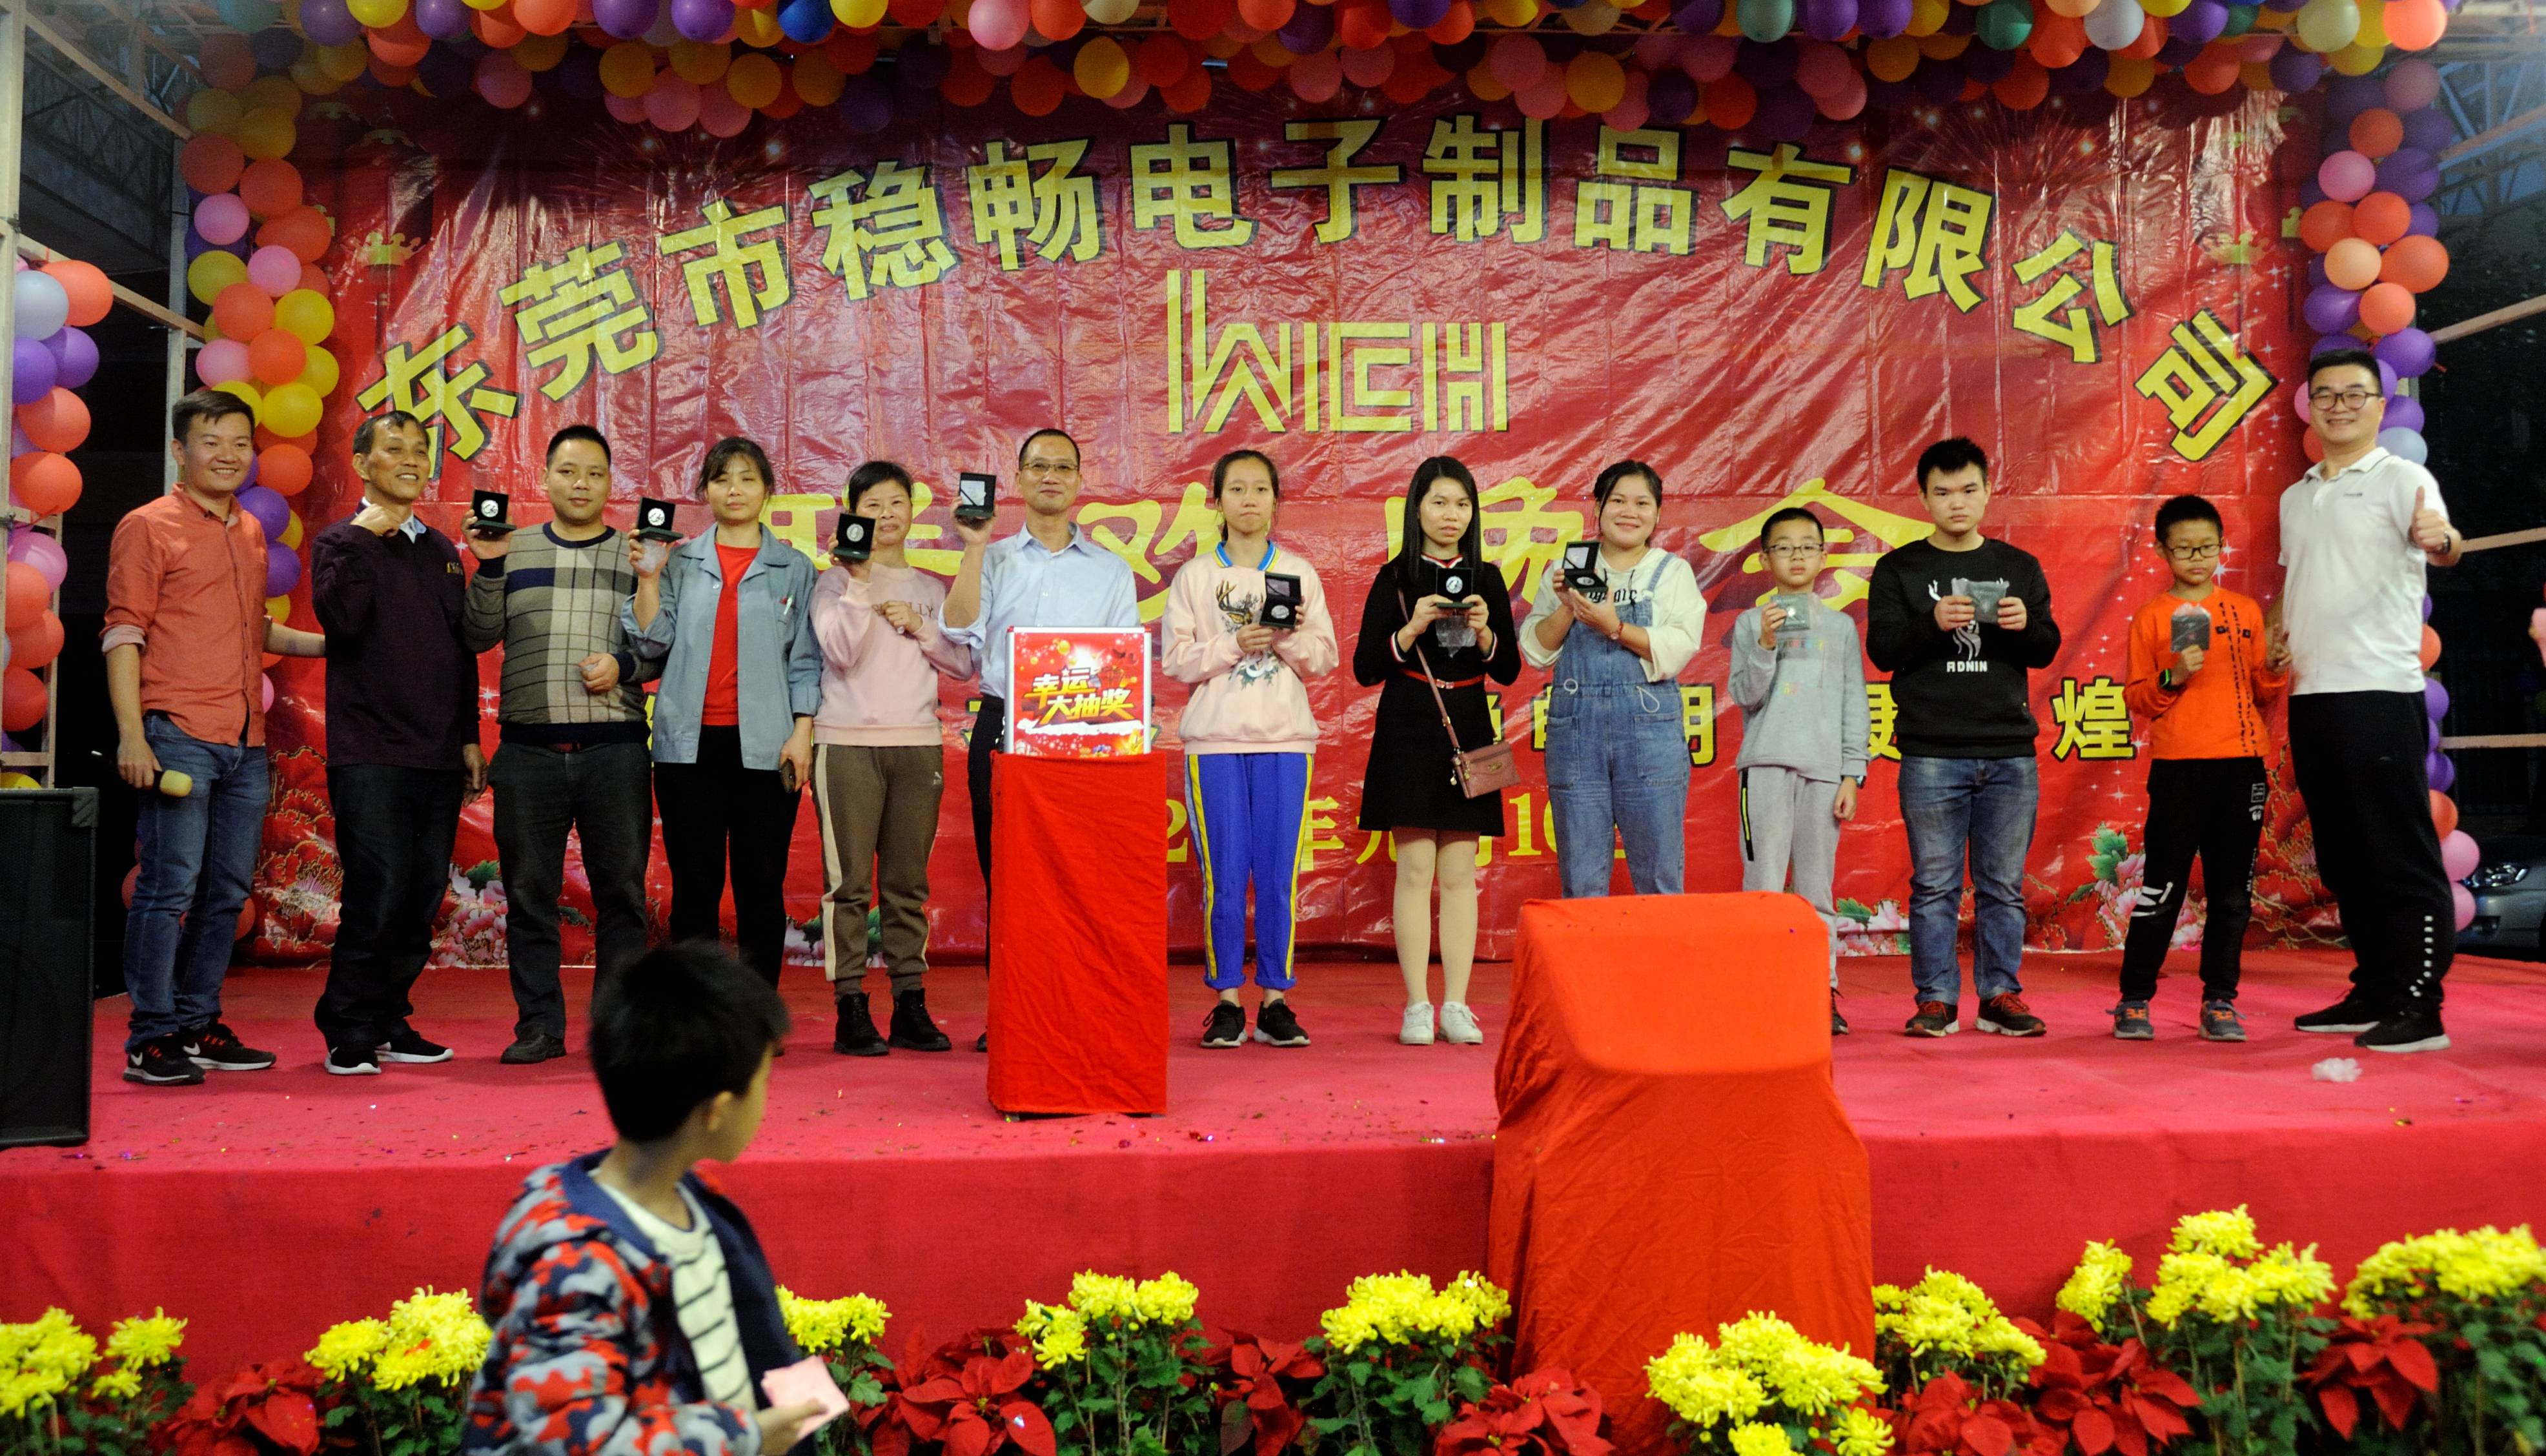 أقامت شركة Wenchang حفلة للاحتفال بالعام الجديد 2020